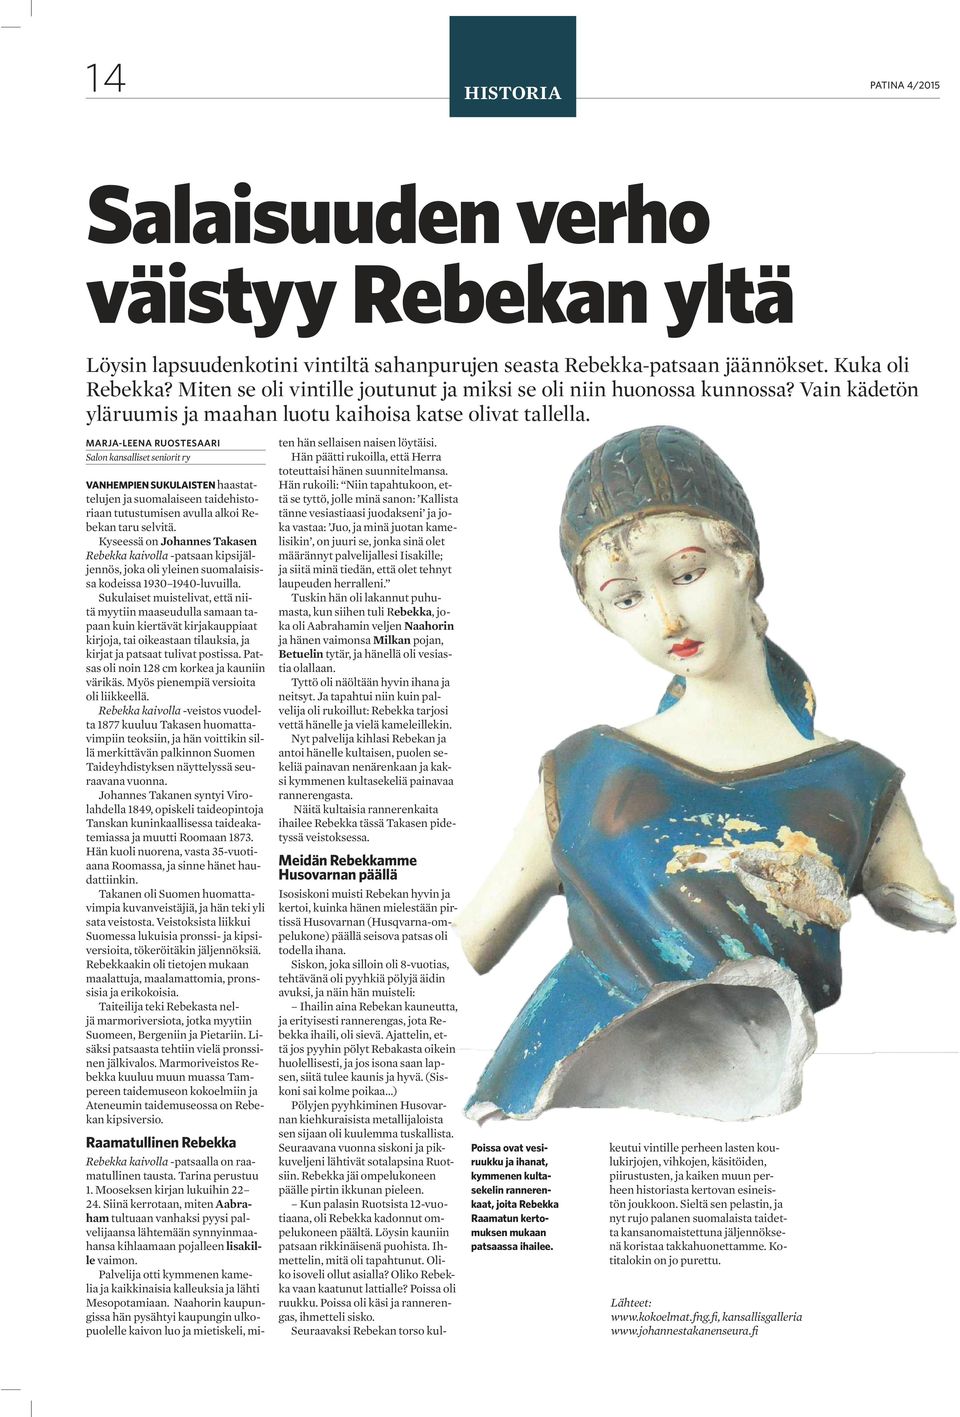 MARJA-LEENA RUOSTESAARI Salon kansalliset seniorit ry VANHEMPIEN SUKULAISTEN haastattelujen ja suomalaiseen taidehistoriaan tutustumisen avulla alkoi Rebekan taru selvitä.